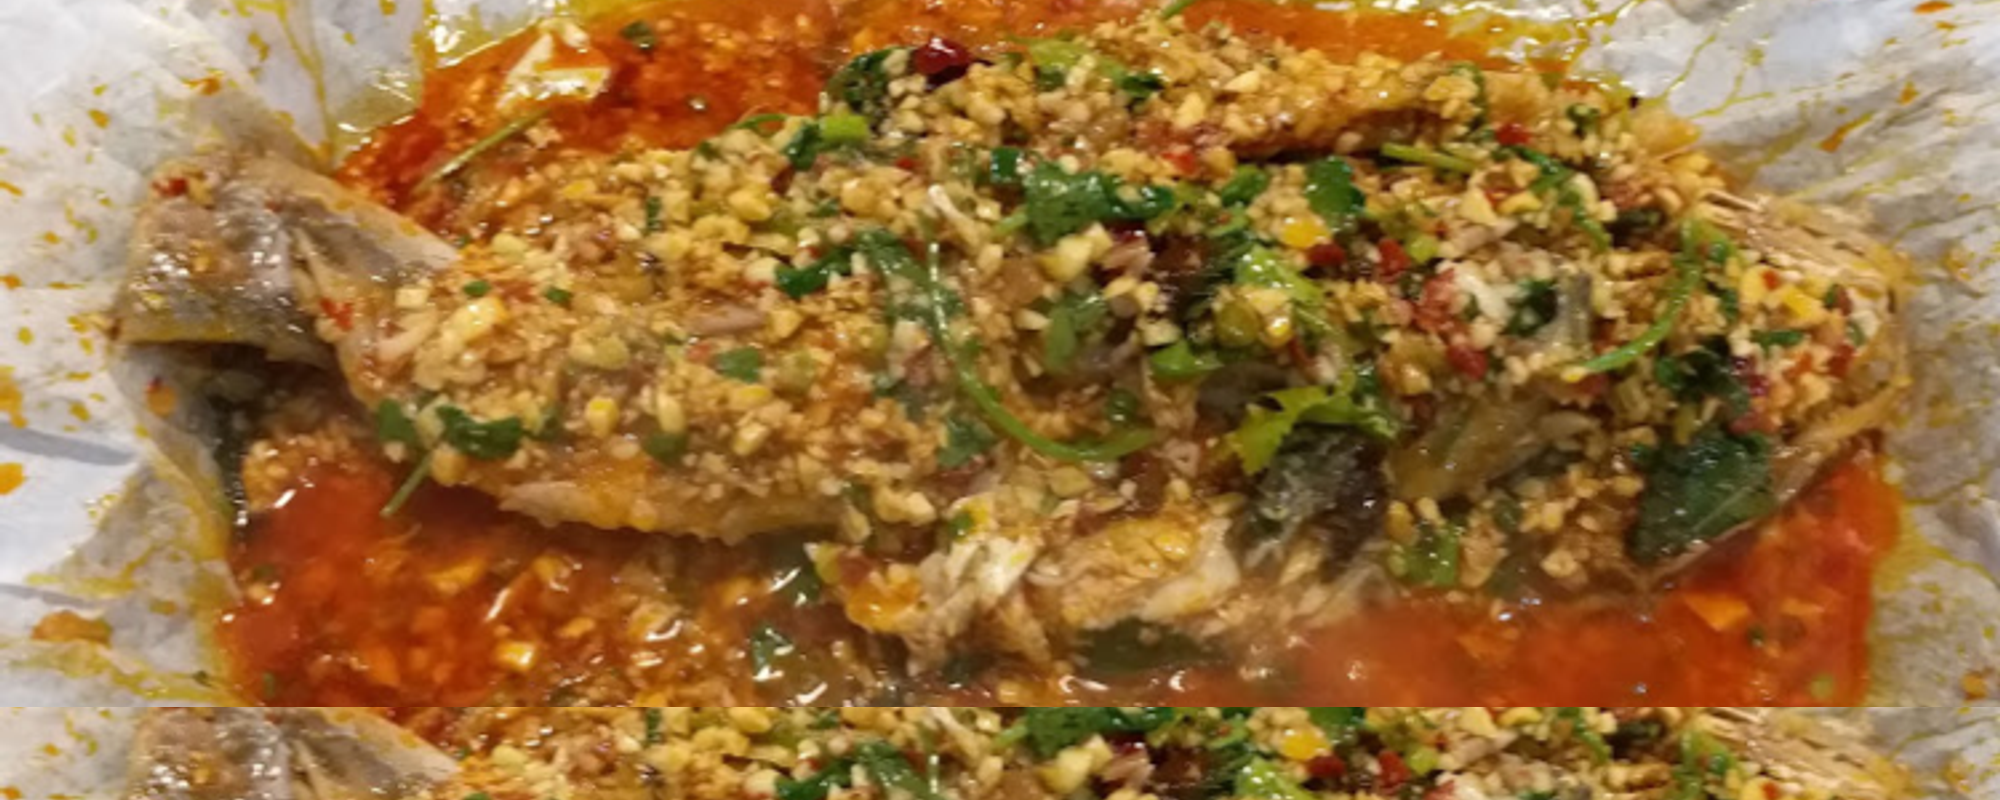 Grilled Fish Restaurant - Tan LuTan Huo 